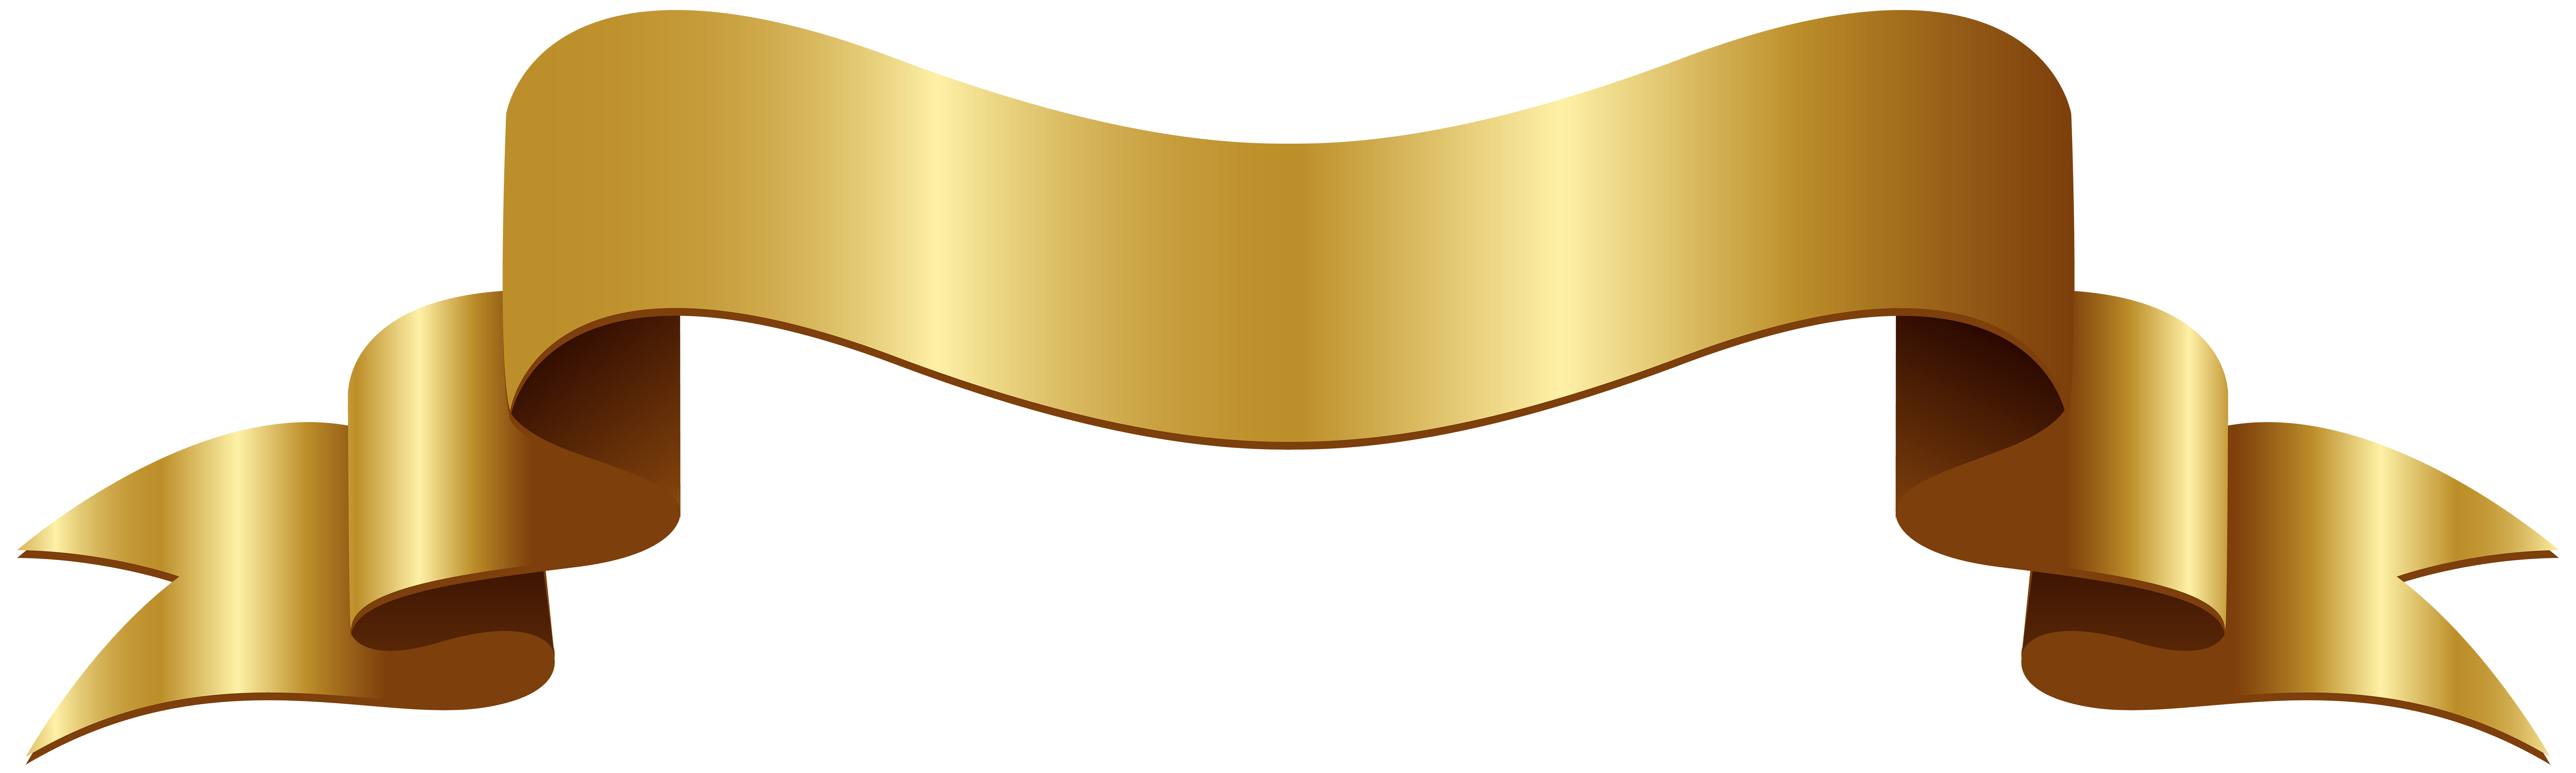 Gold Badge - Banner Golden PNG Clip Art Image png download - 8000*2400 ...